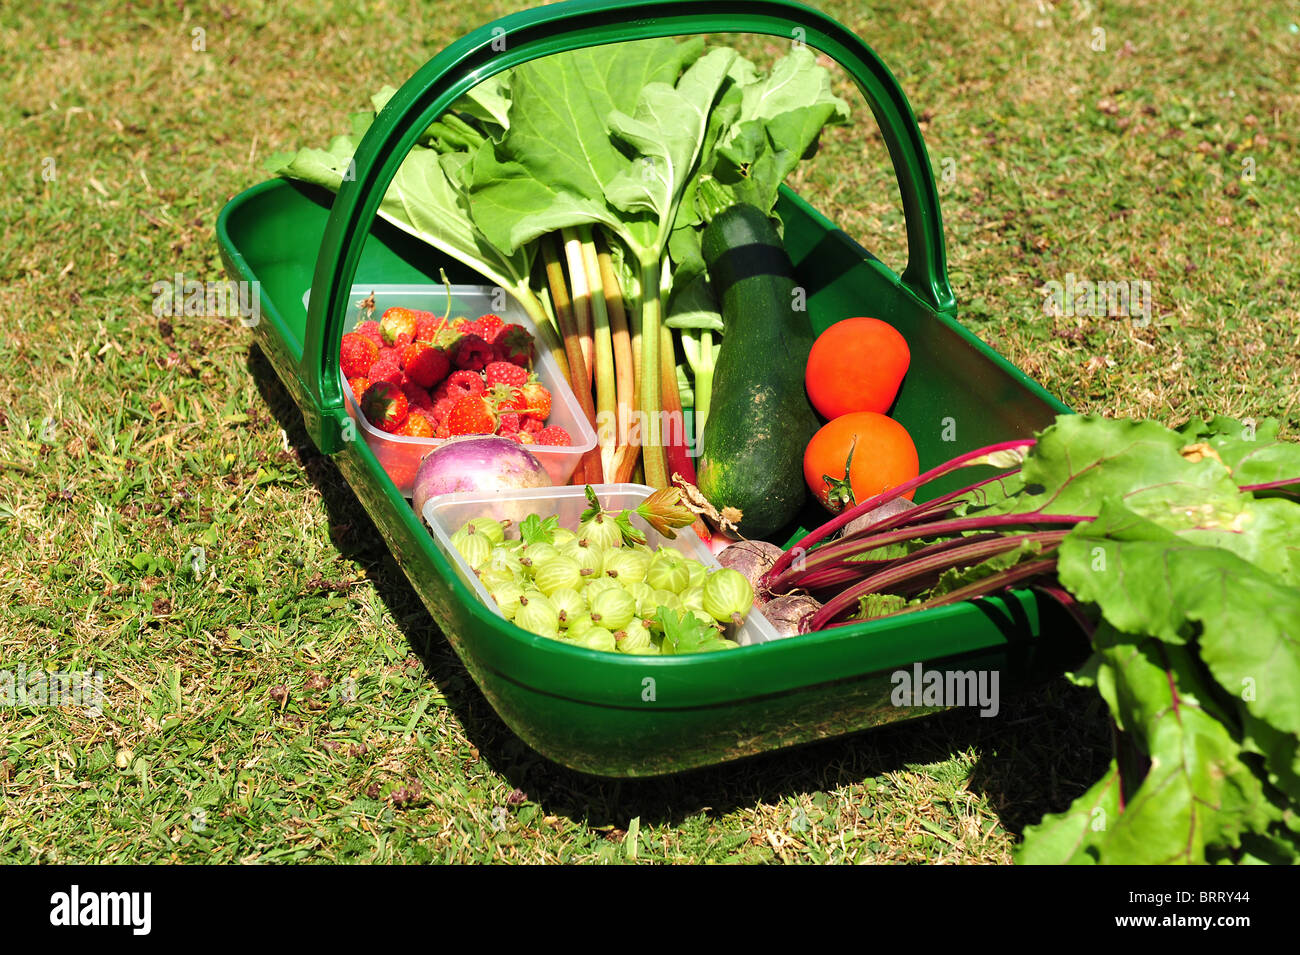 Gärtner Trug gefüllt mit frischem Obst und Gemüse. Stockfoto